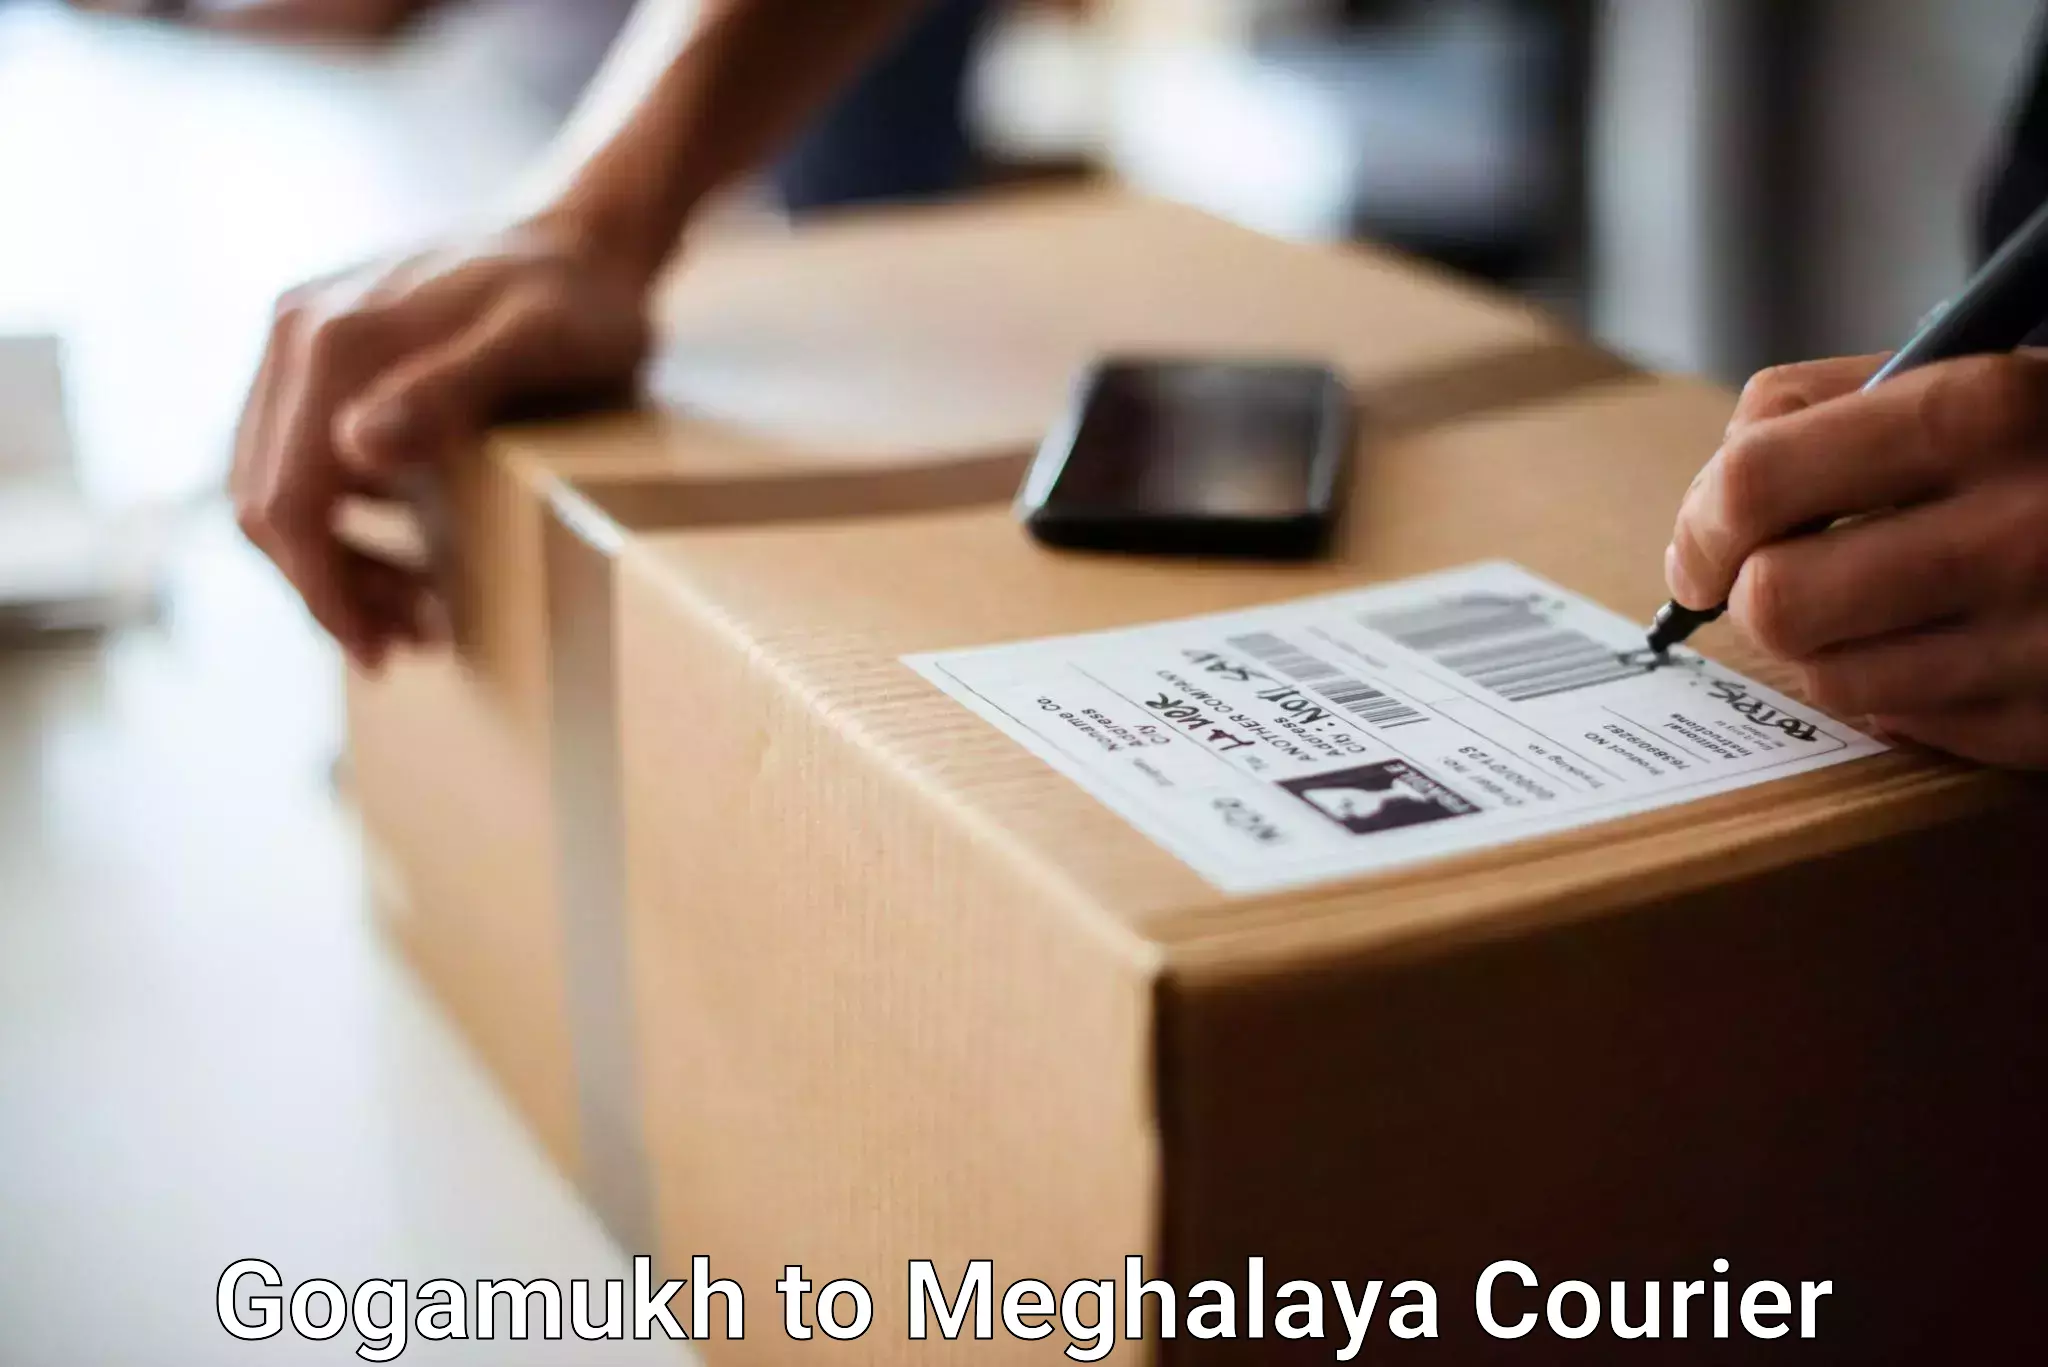 Urgent luggage shipment in Gogamukh to Nongpoh